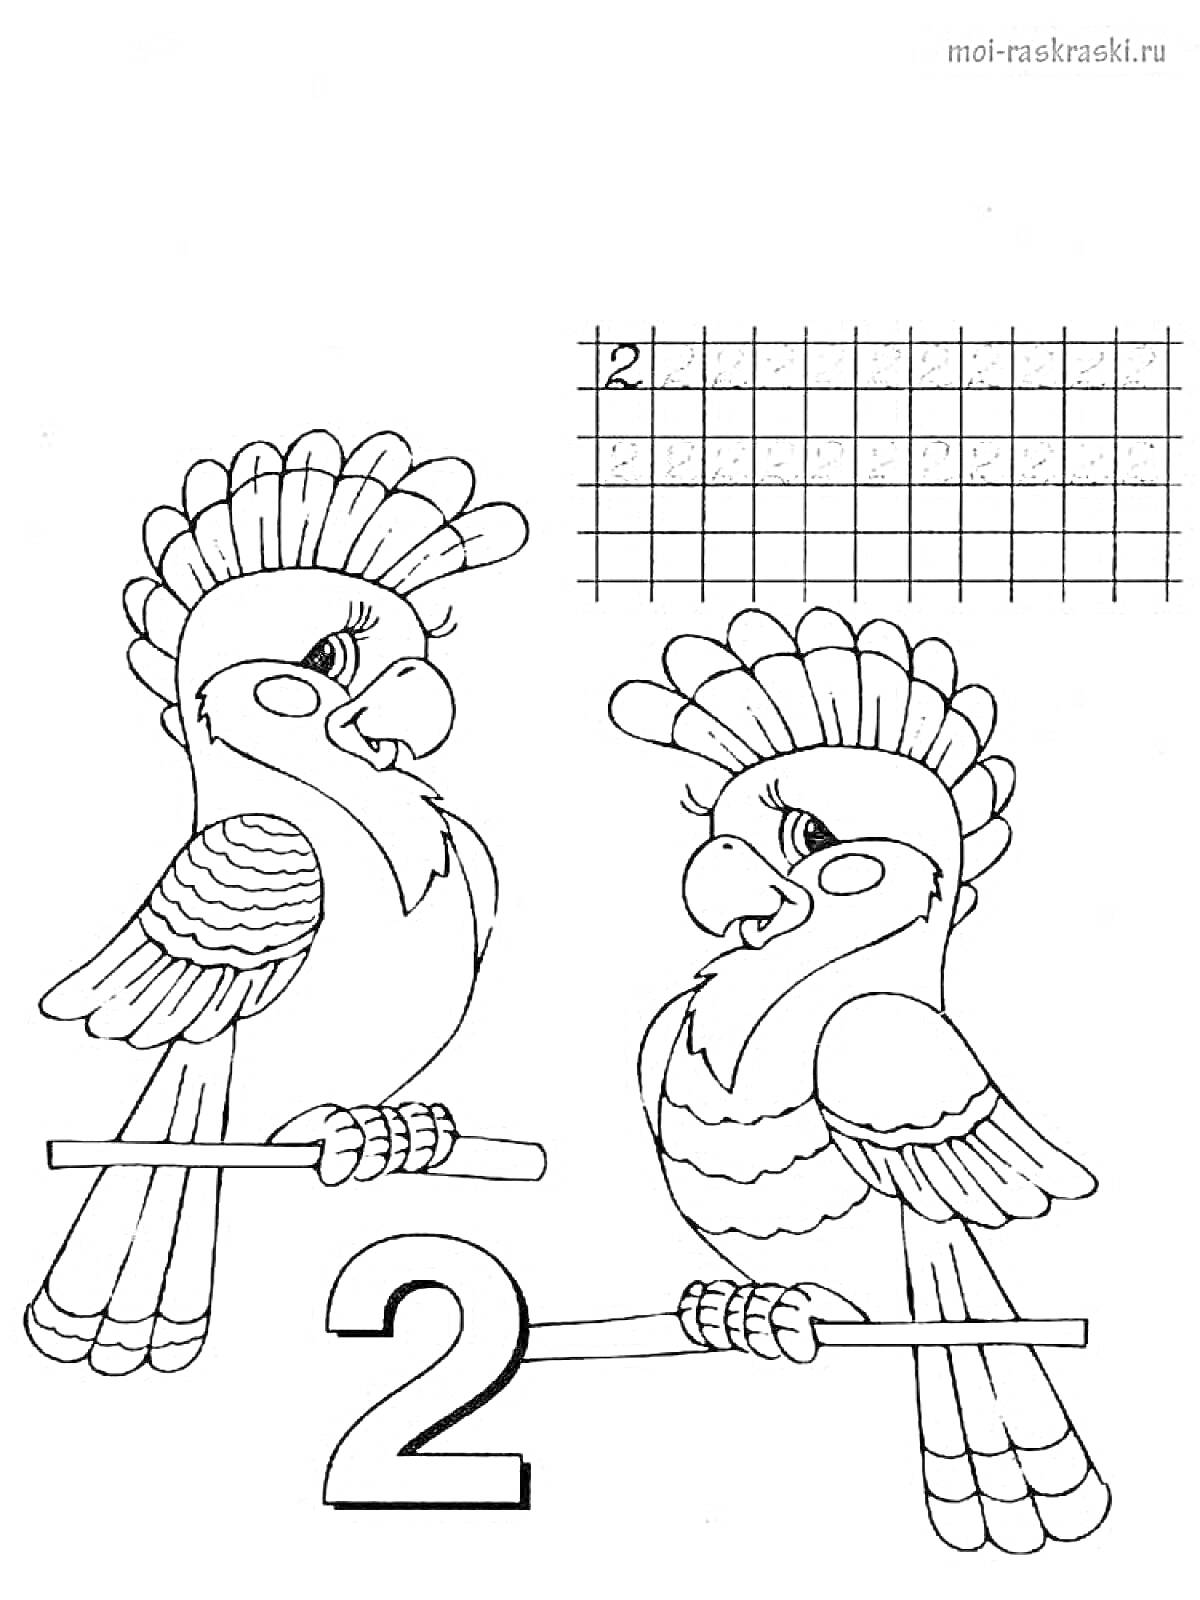 Раскраска Два попугая на ветке и цифра 2, упражнение по написанию числа